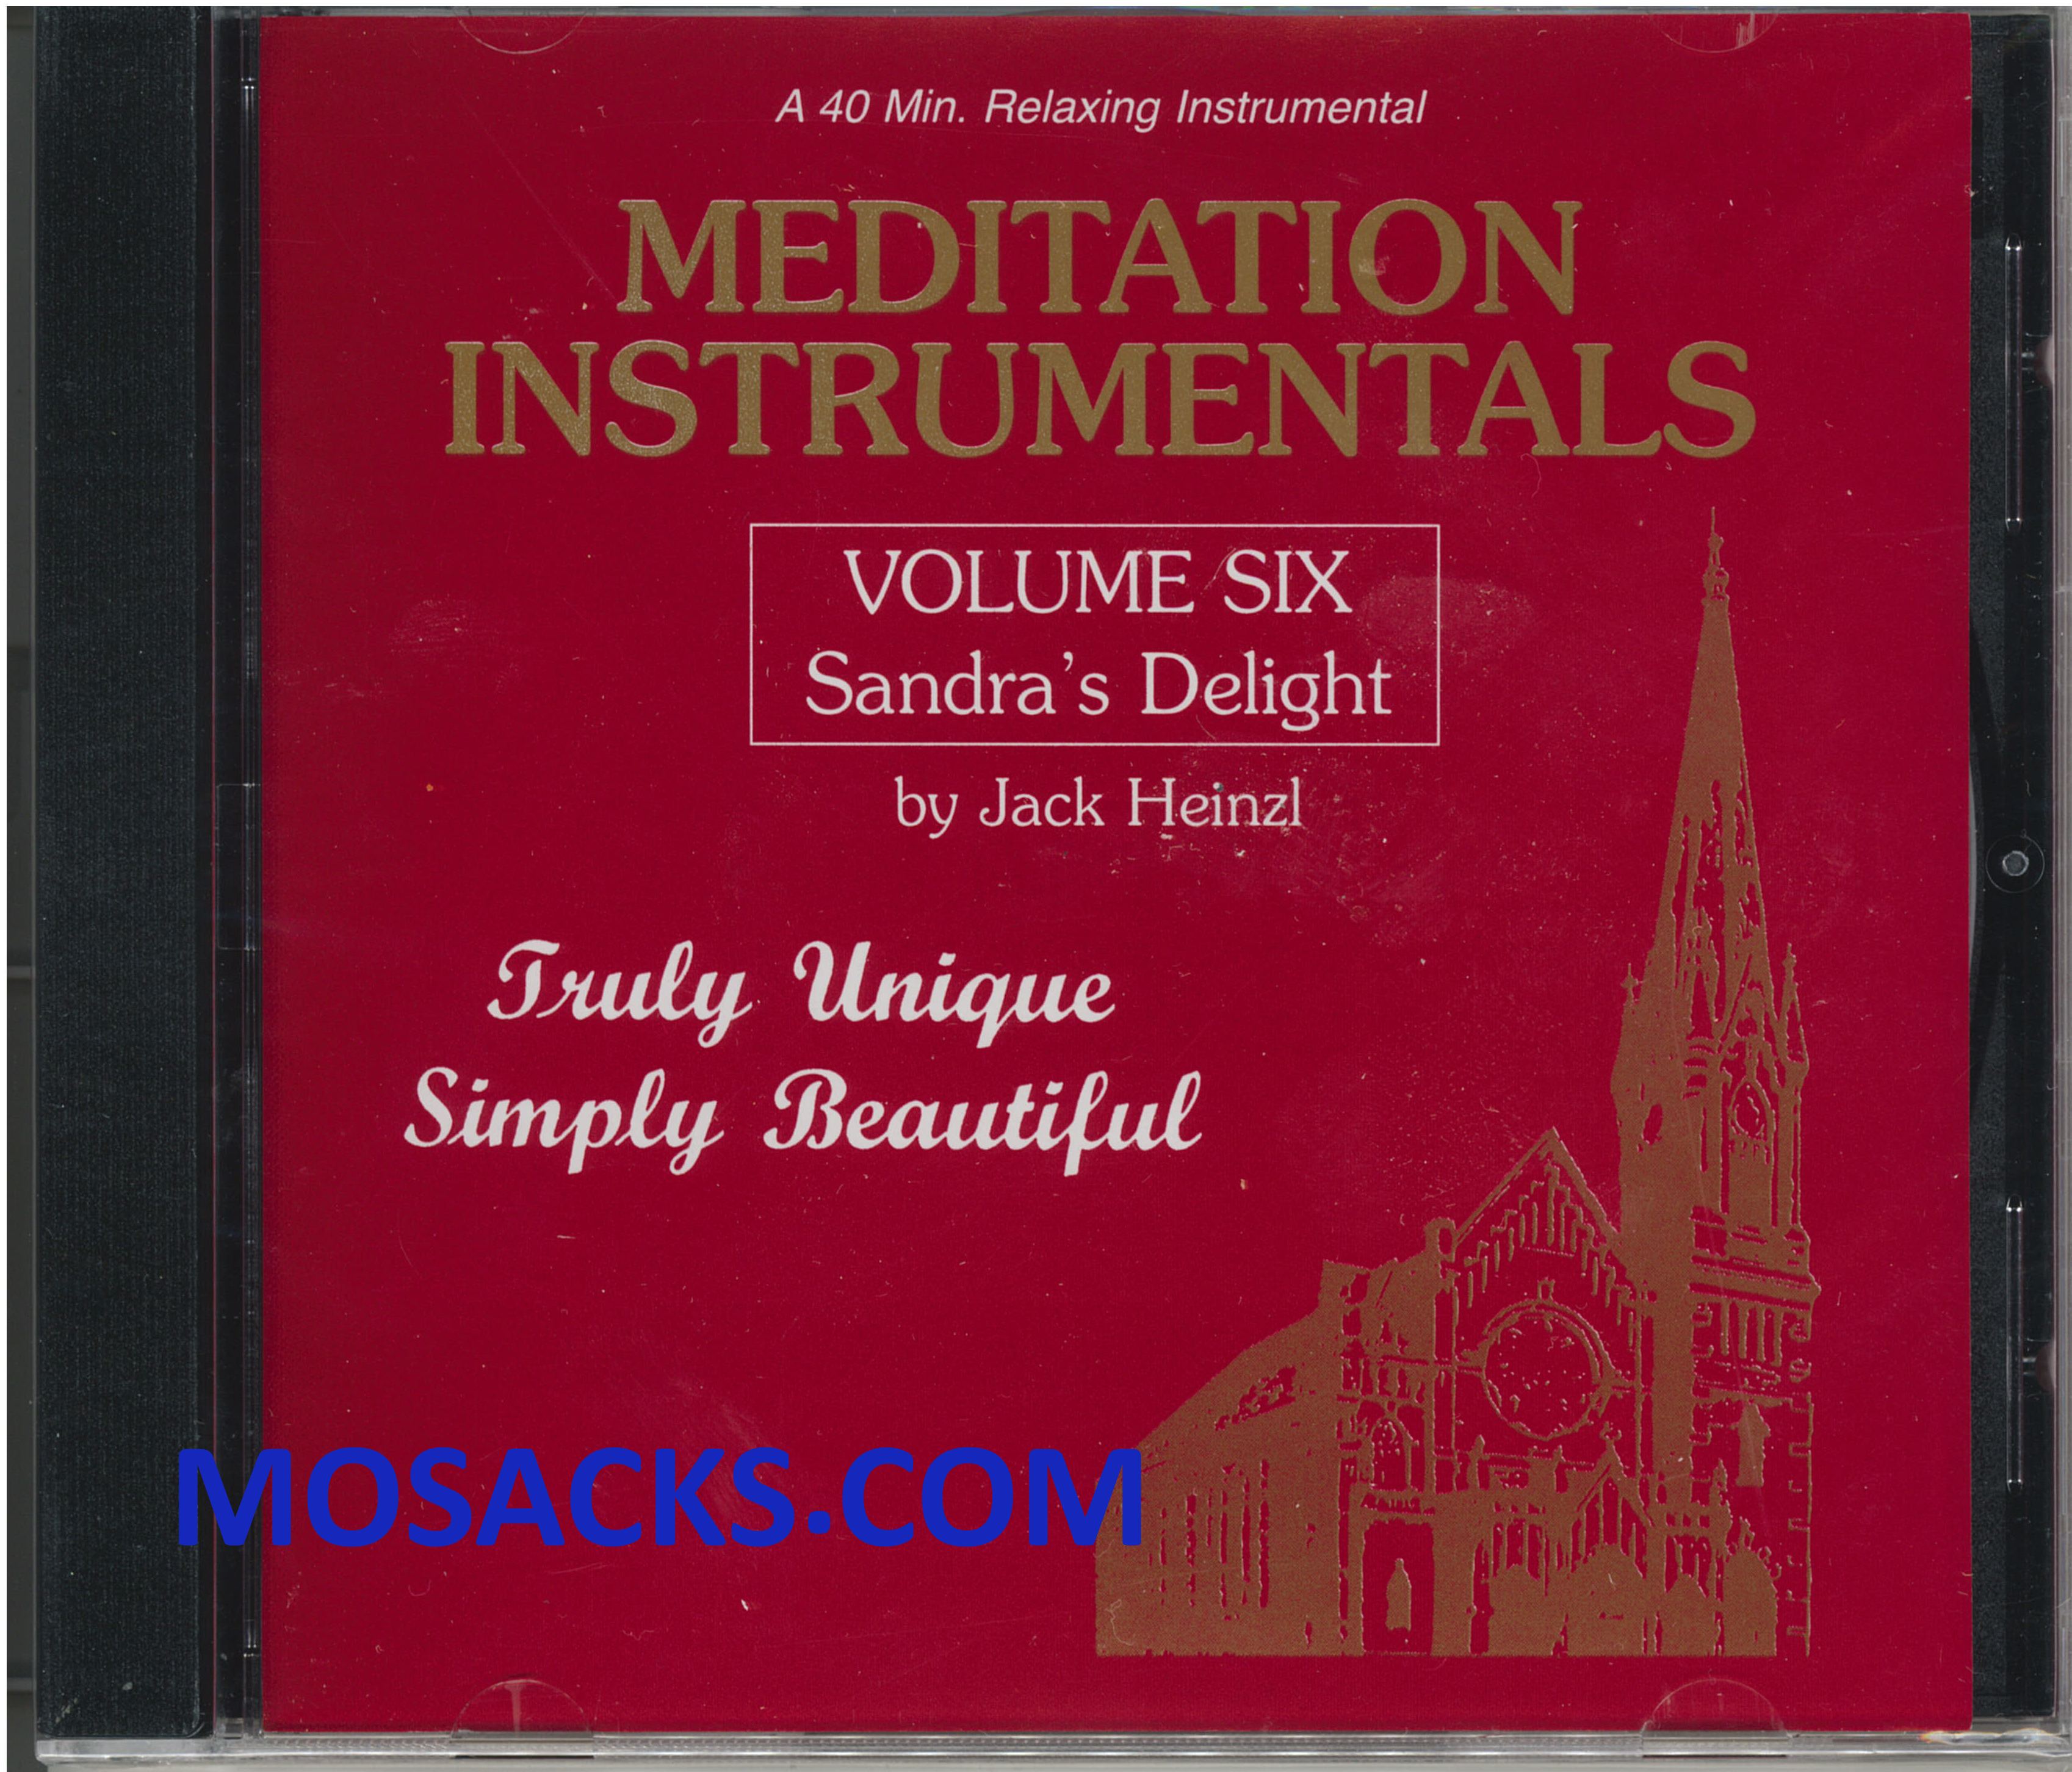 Meditation Instrumentals Volume 6 by Jack Heinzl 285-675430520016